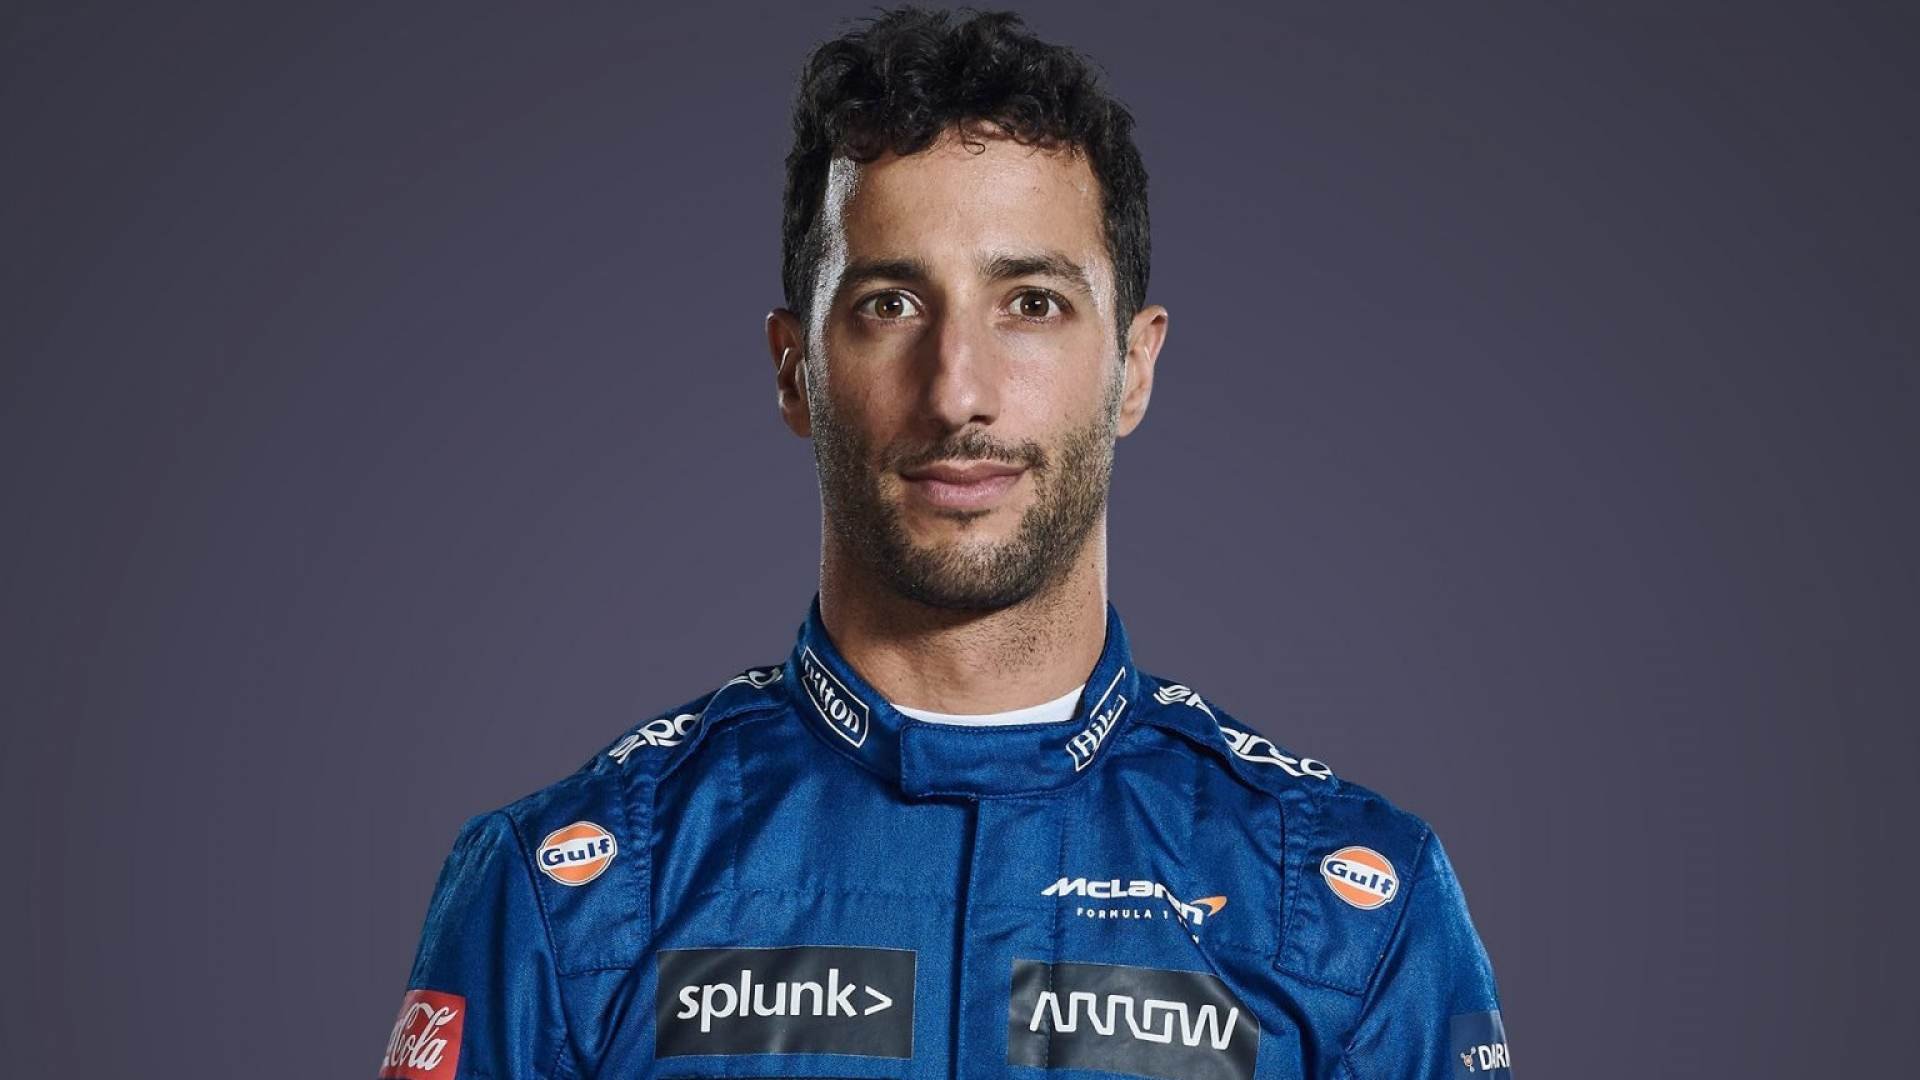 More information about "Anche Daniel Ricciardo cambia idea sul simracing e fa un confronto interessante..."